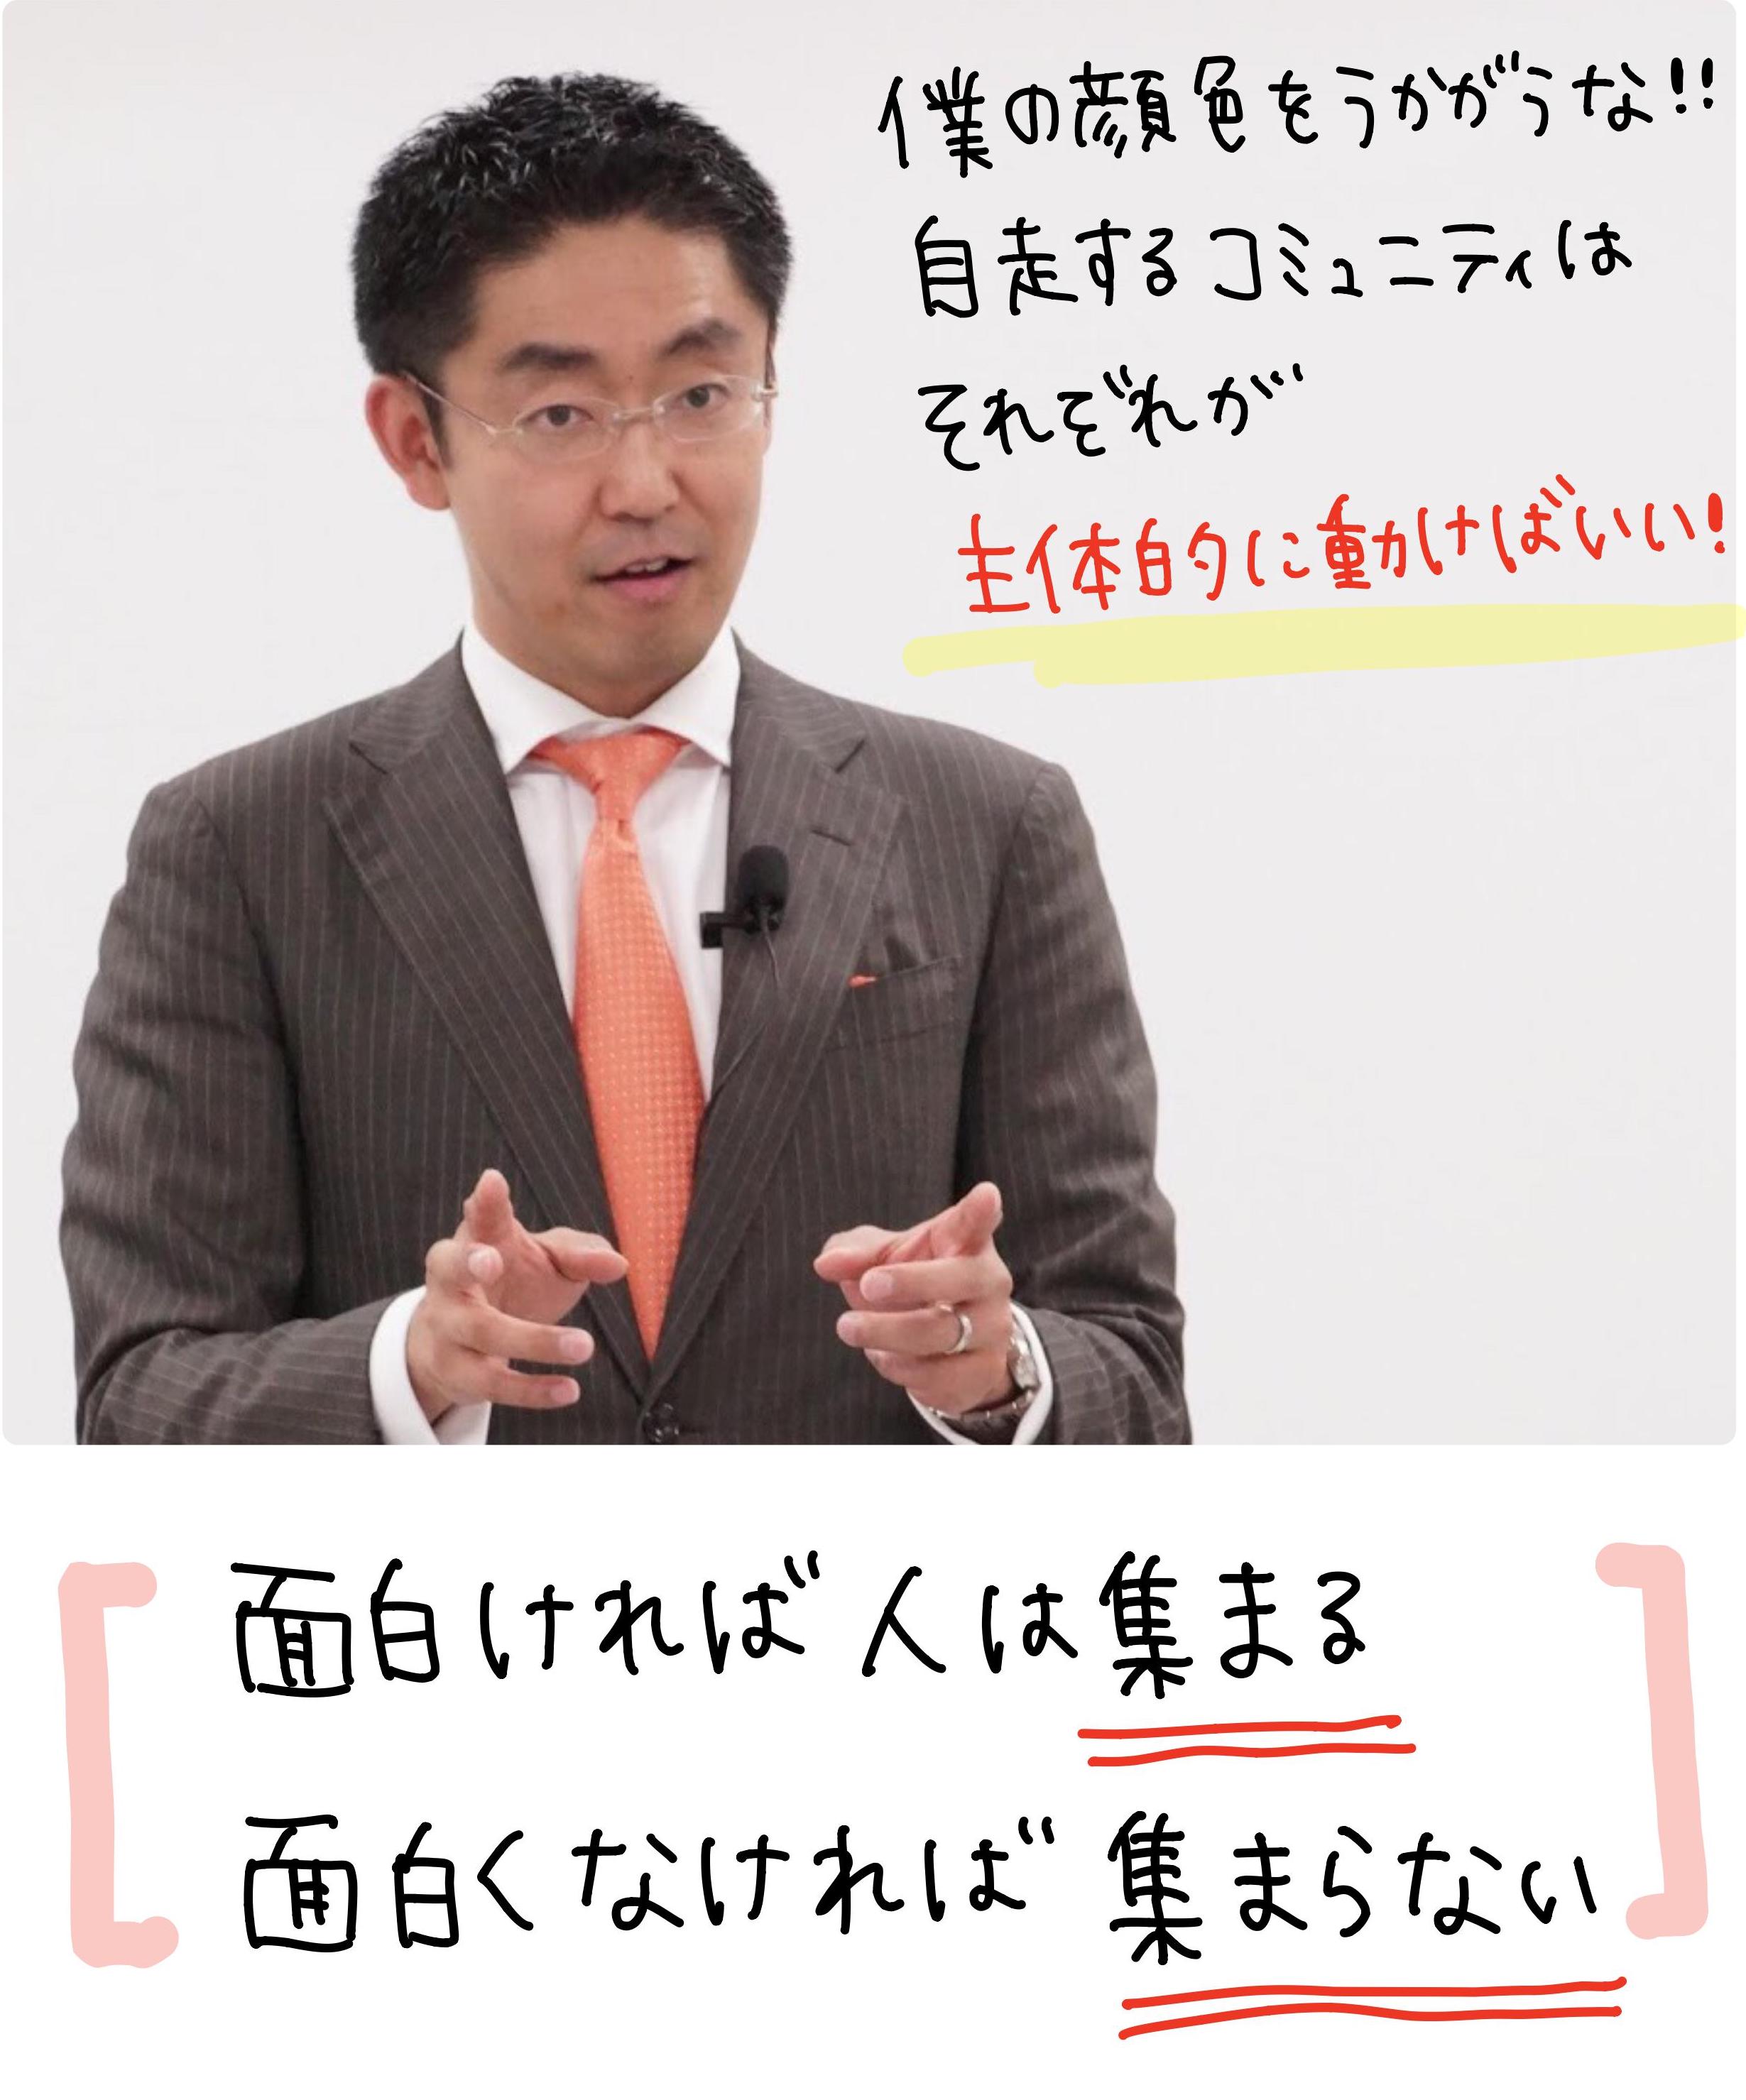 チームNo,1代表の遠藤晃先生のメッセージ